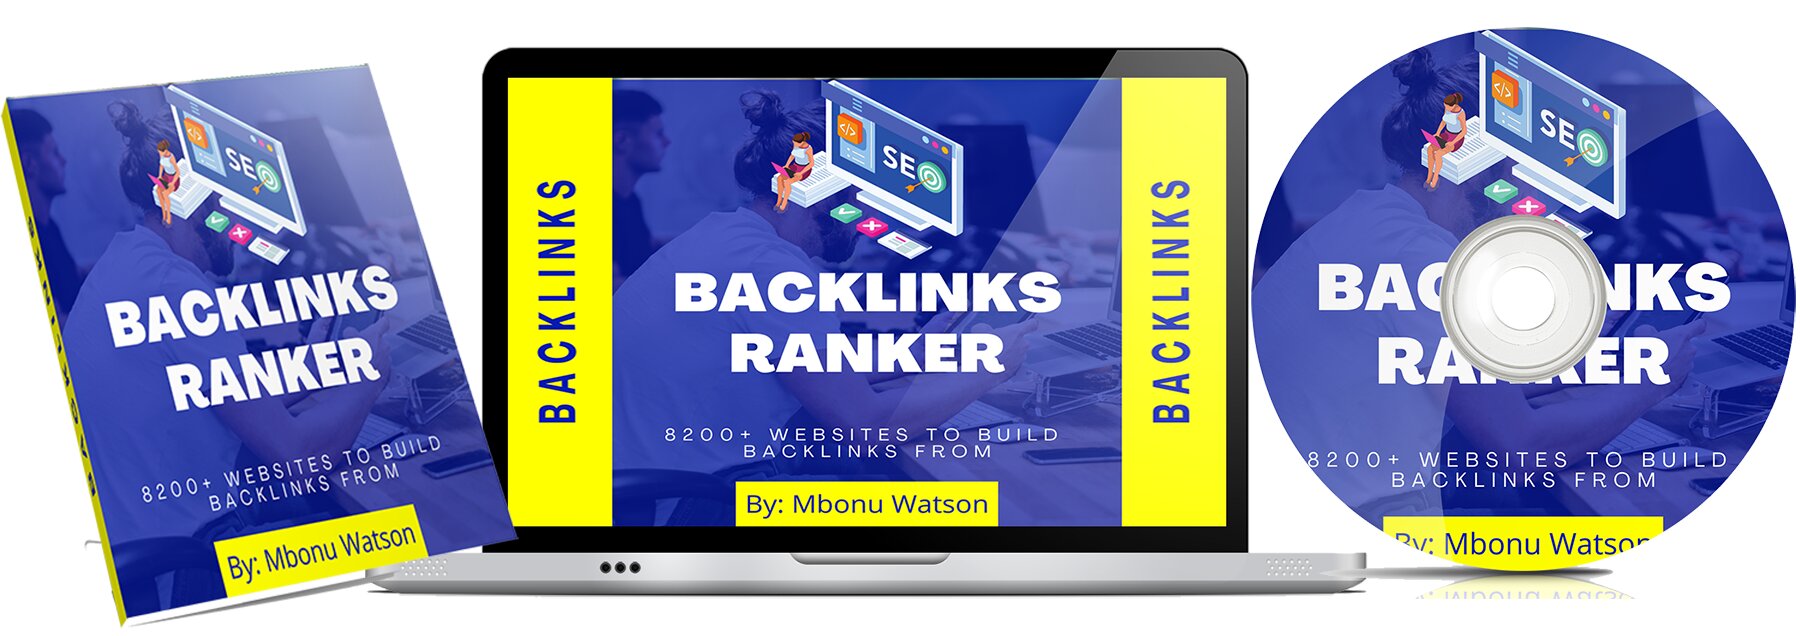 Backlinks-Ranker-Kit